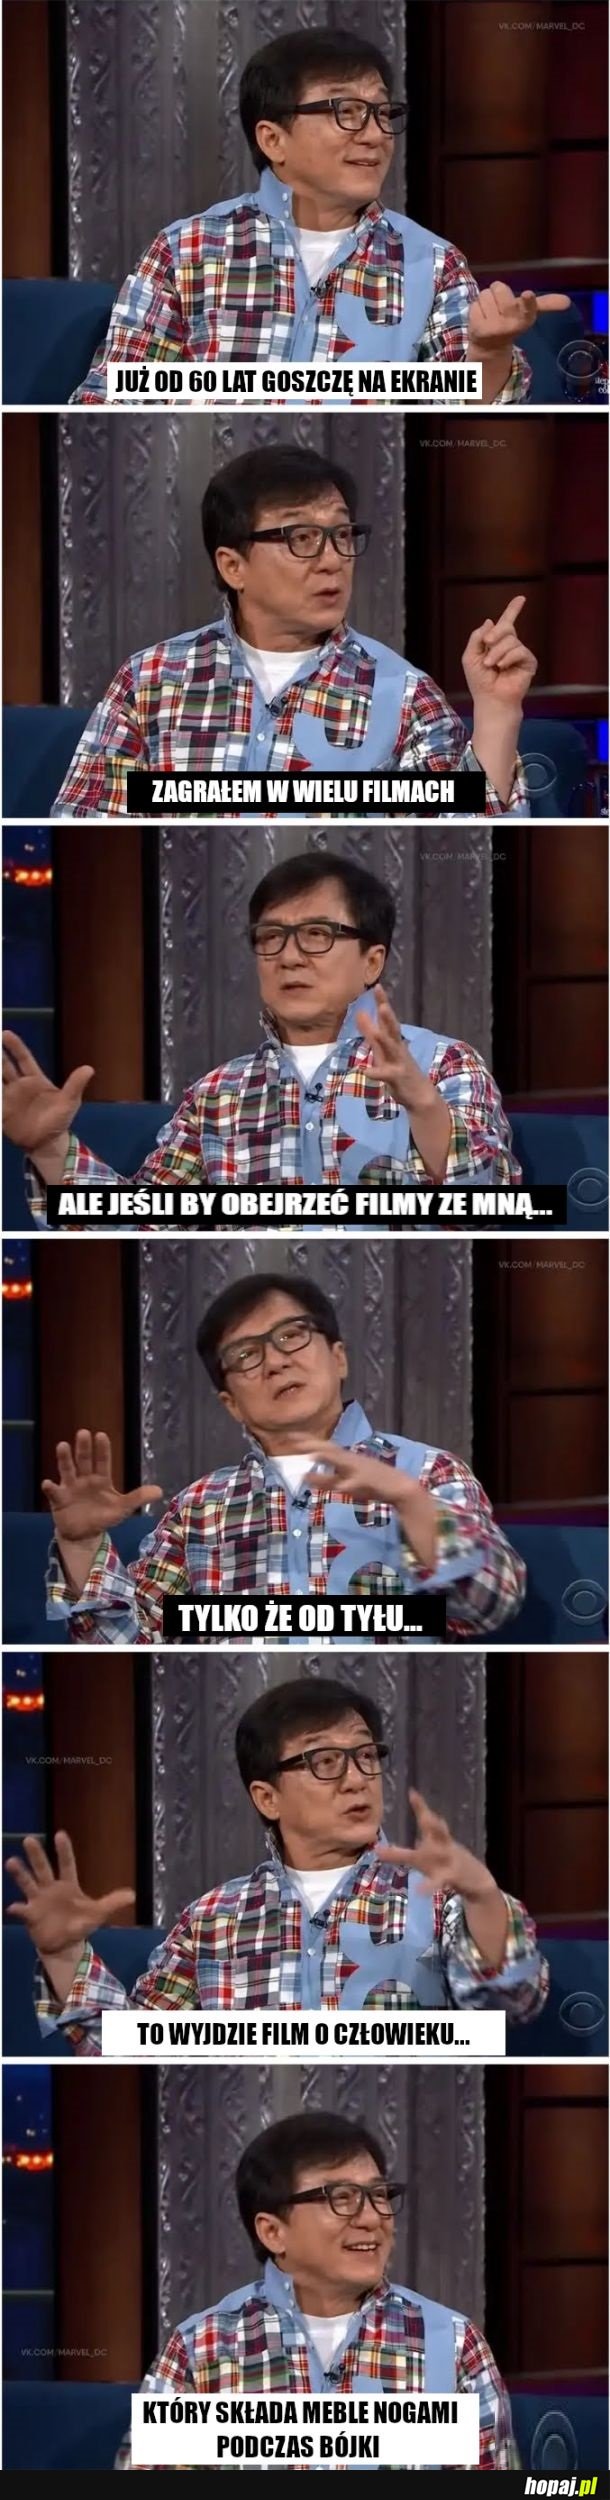 Jackie Chan, znany aktor